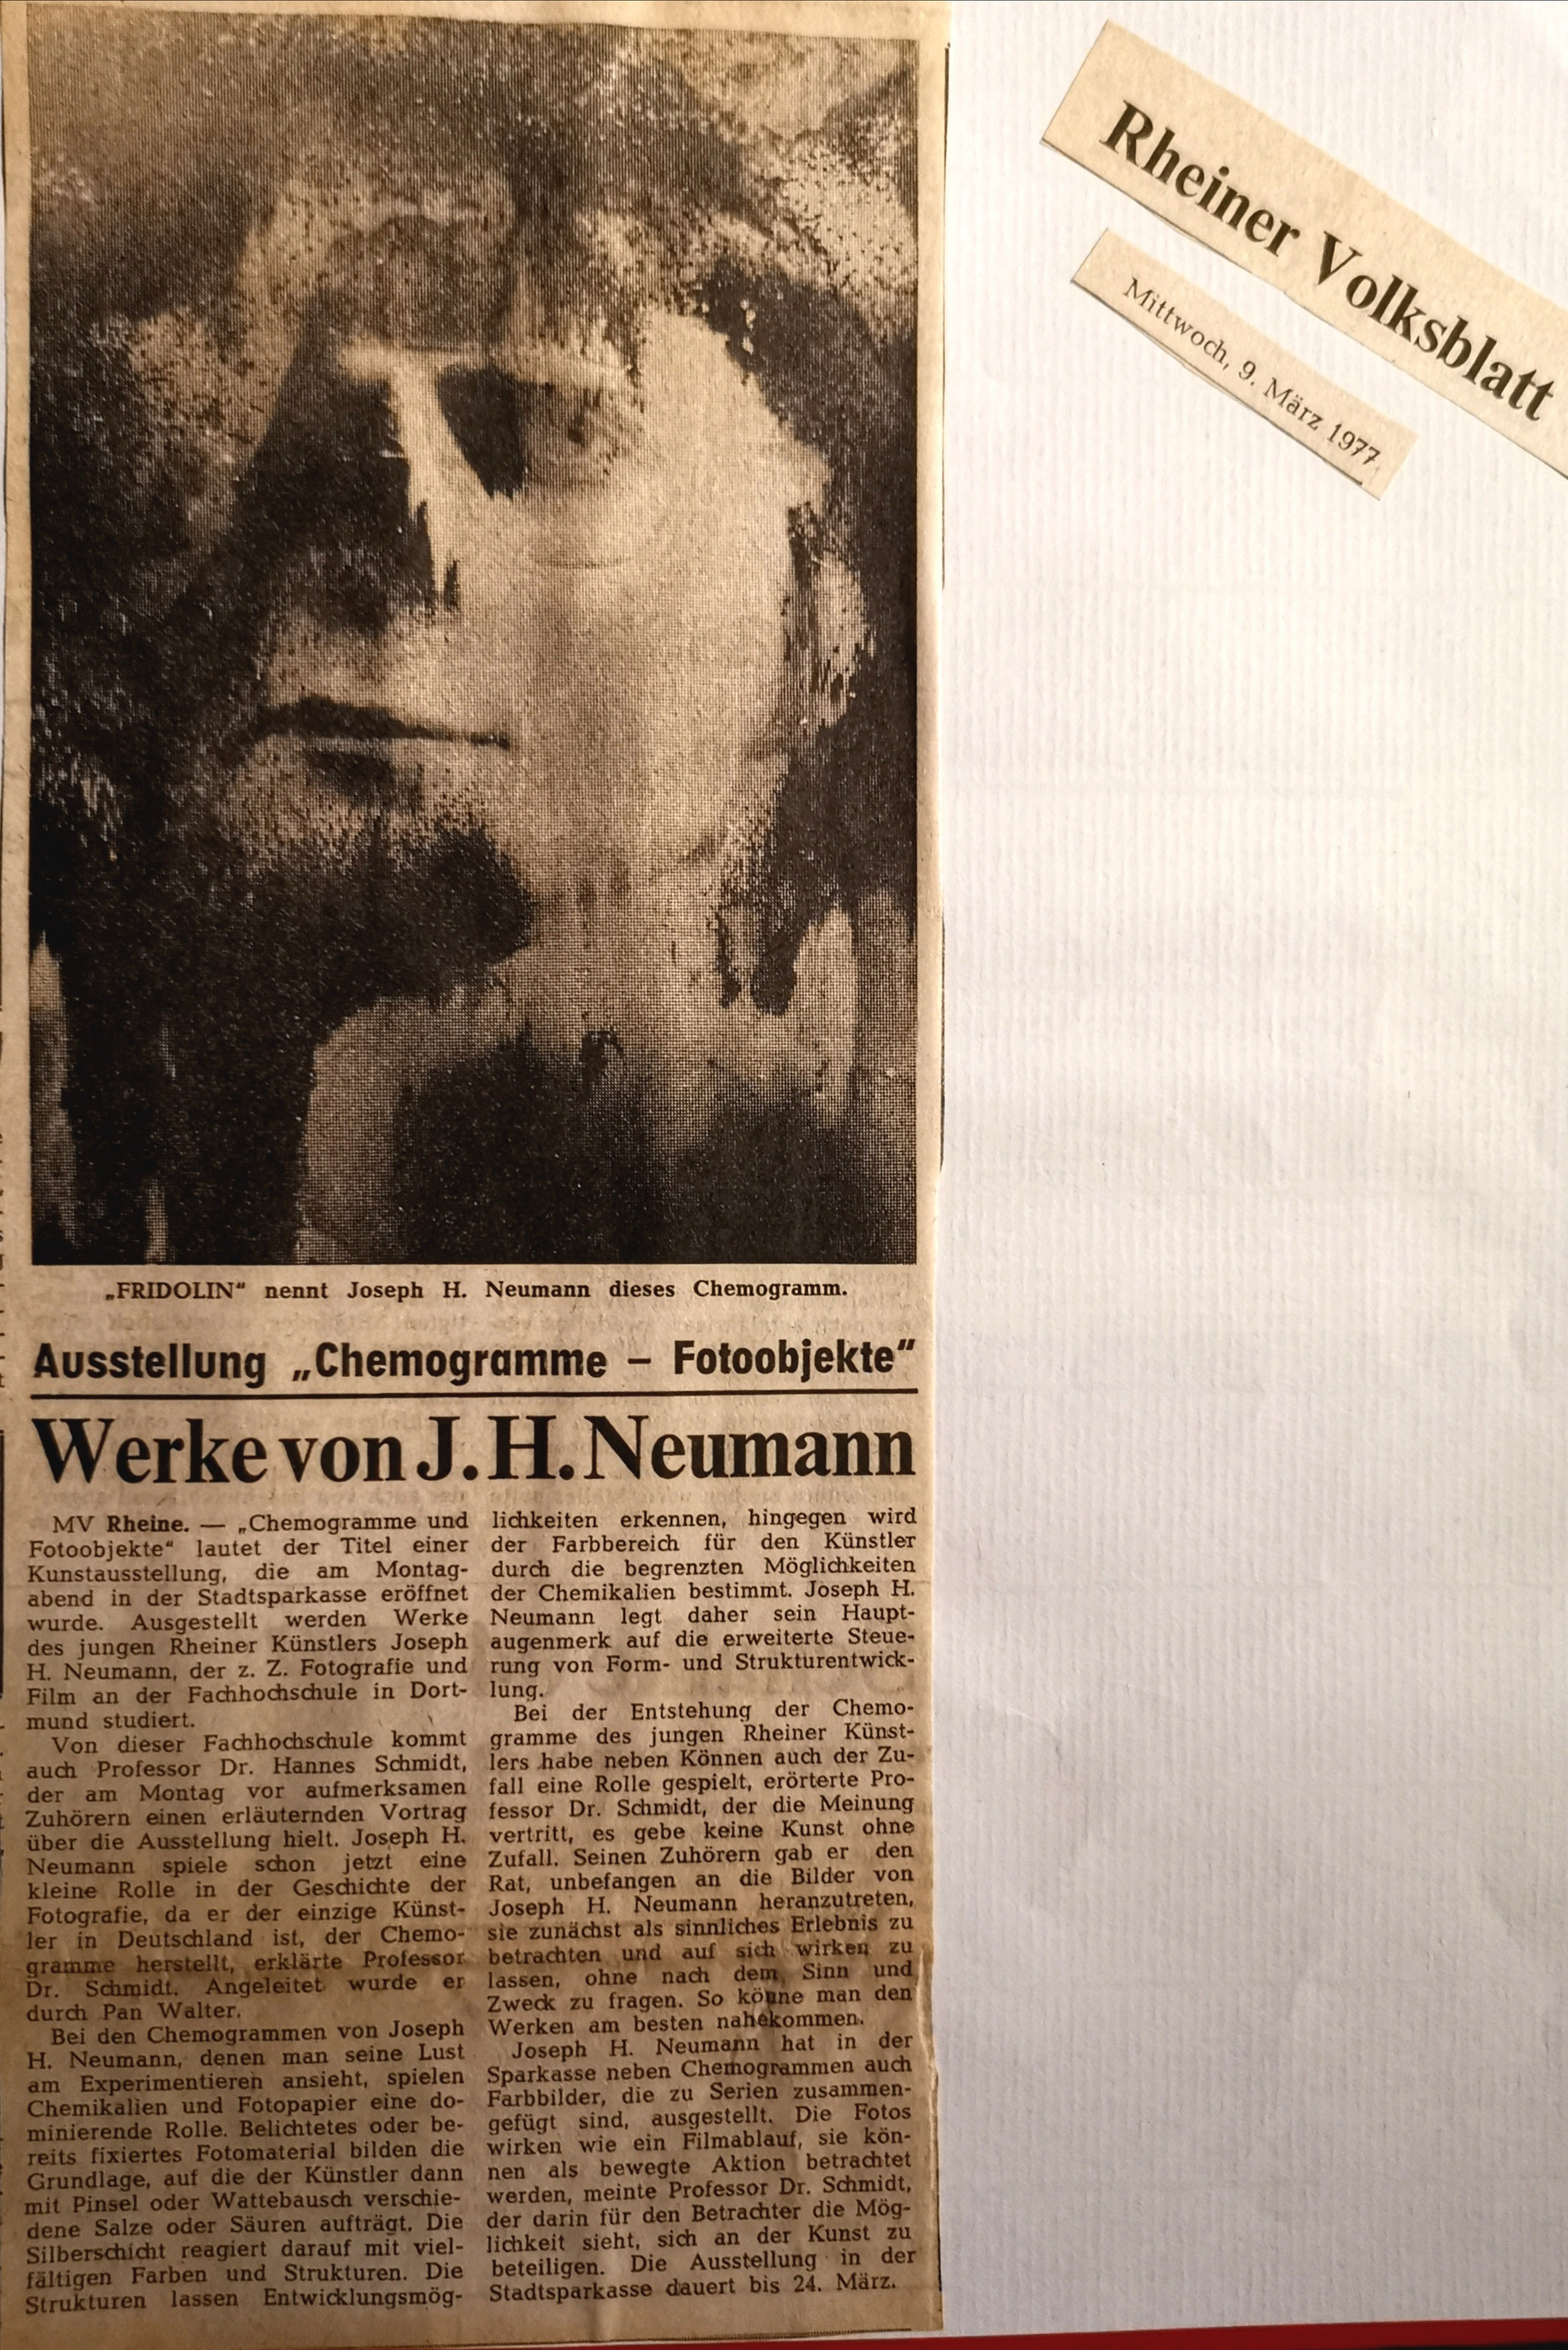 Münsterländische Volkszeitung vom 7.3.1977
Ausstellung Foyer Sparkasse Rheine